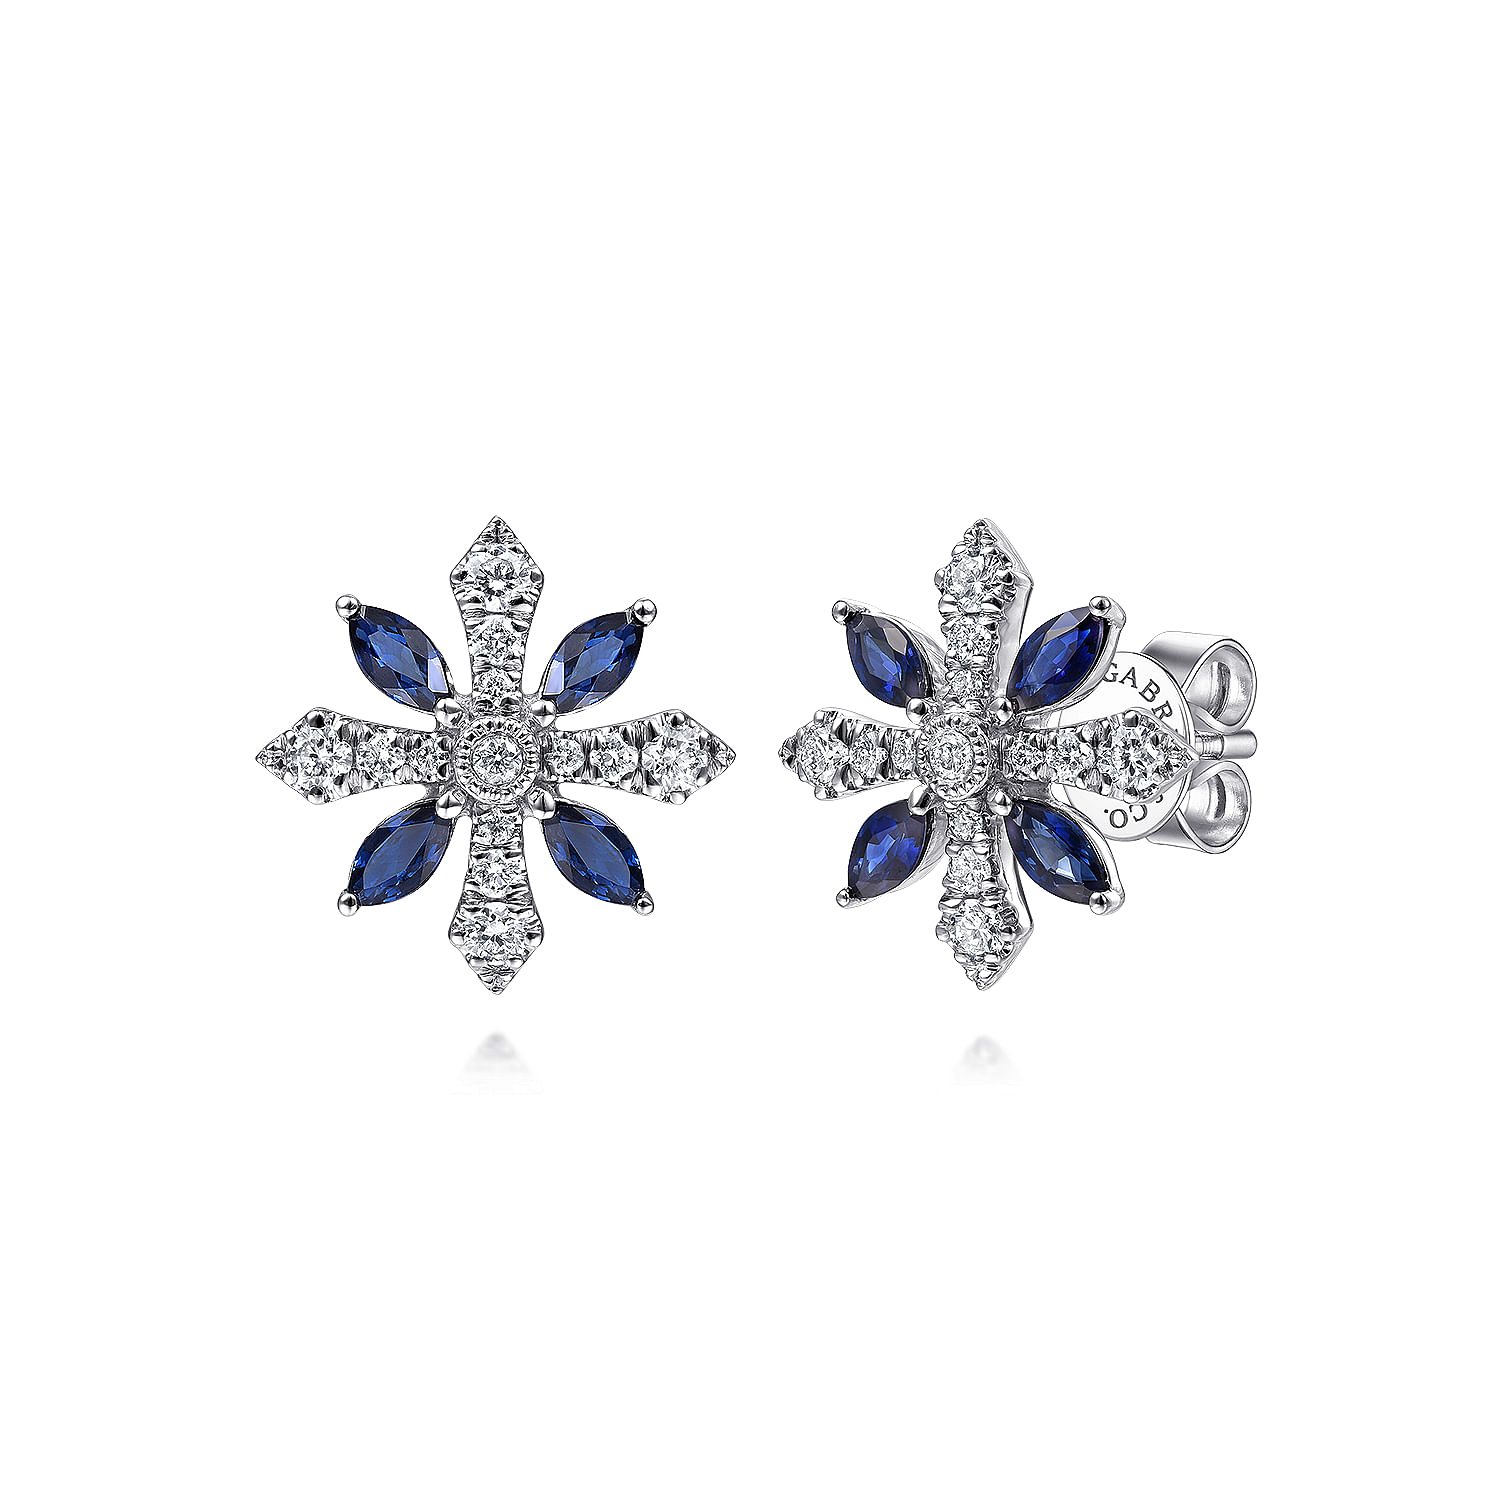 14K White Gold Diamond and Sapphire Flower Stud Earrings